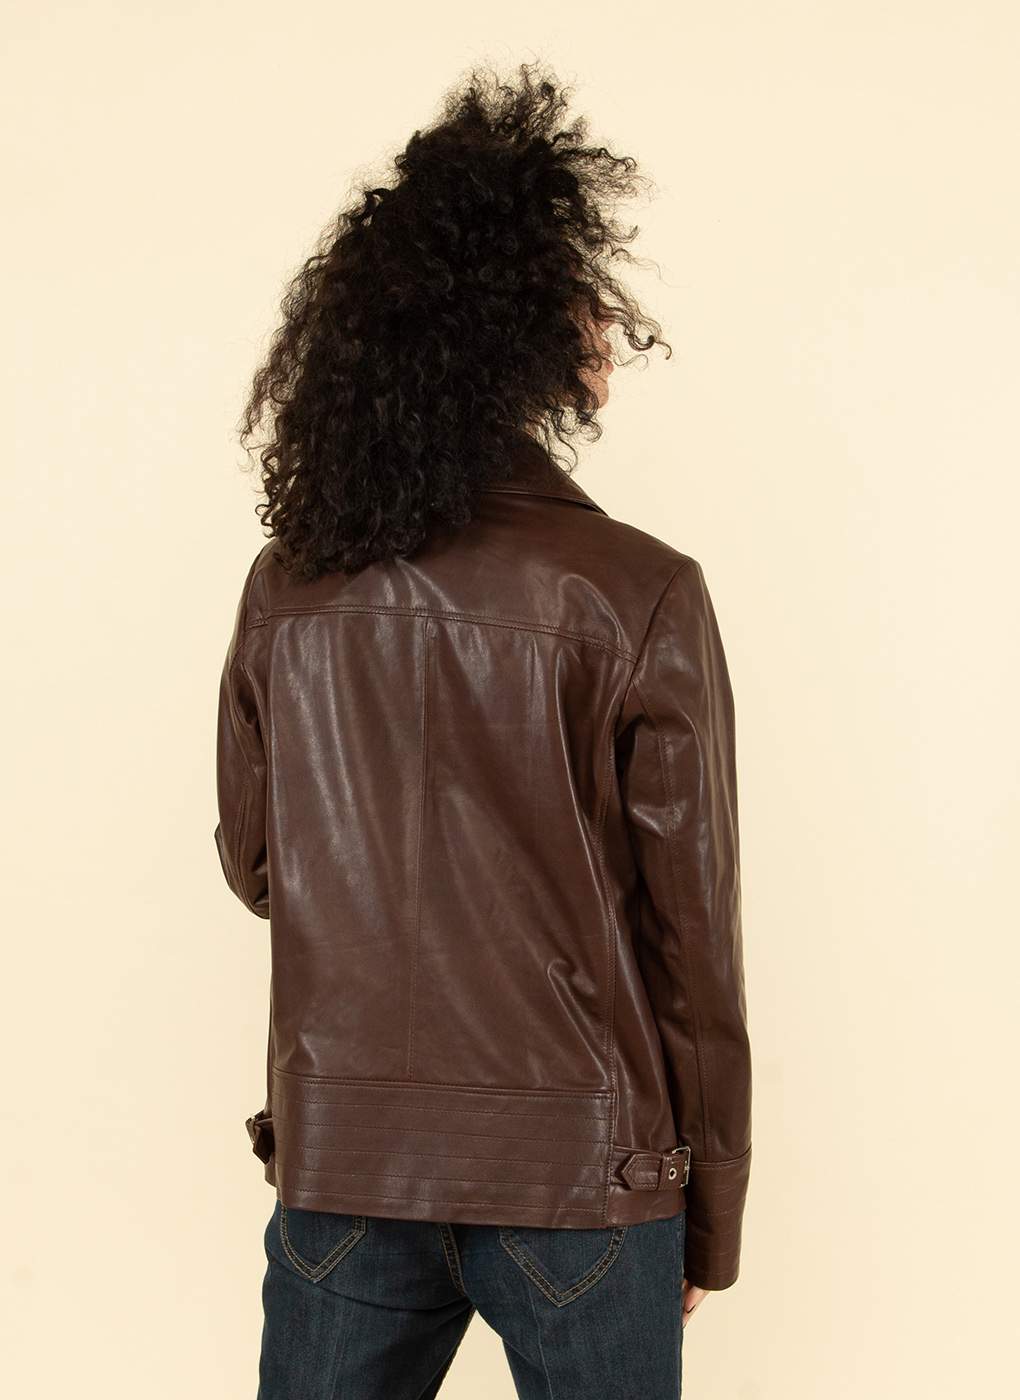 Кожаная куртка женская Каляев 55130 коричневая 52 RU